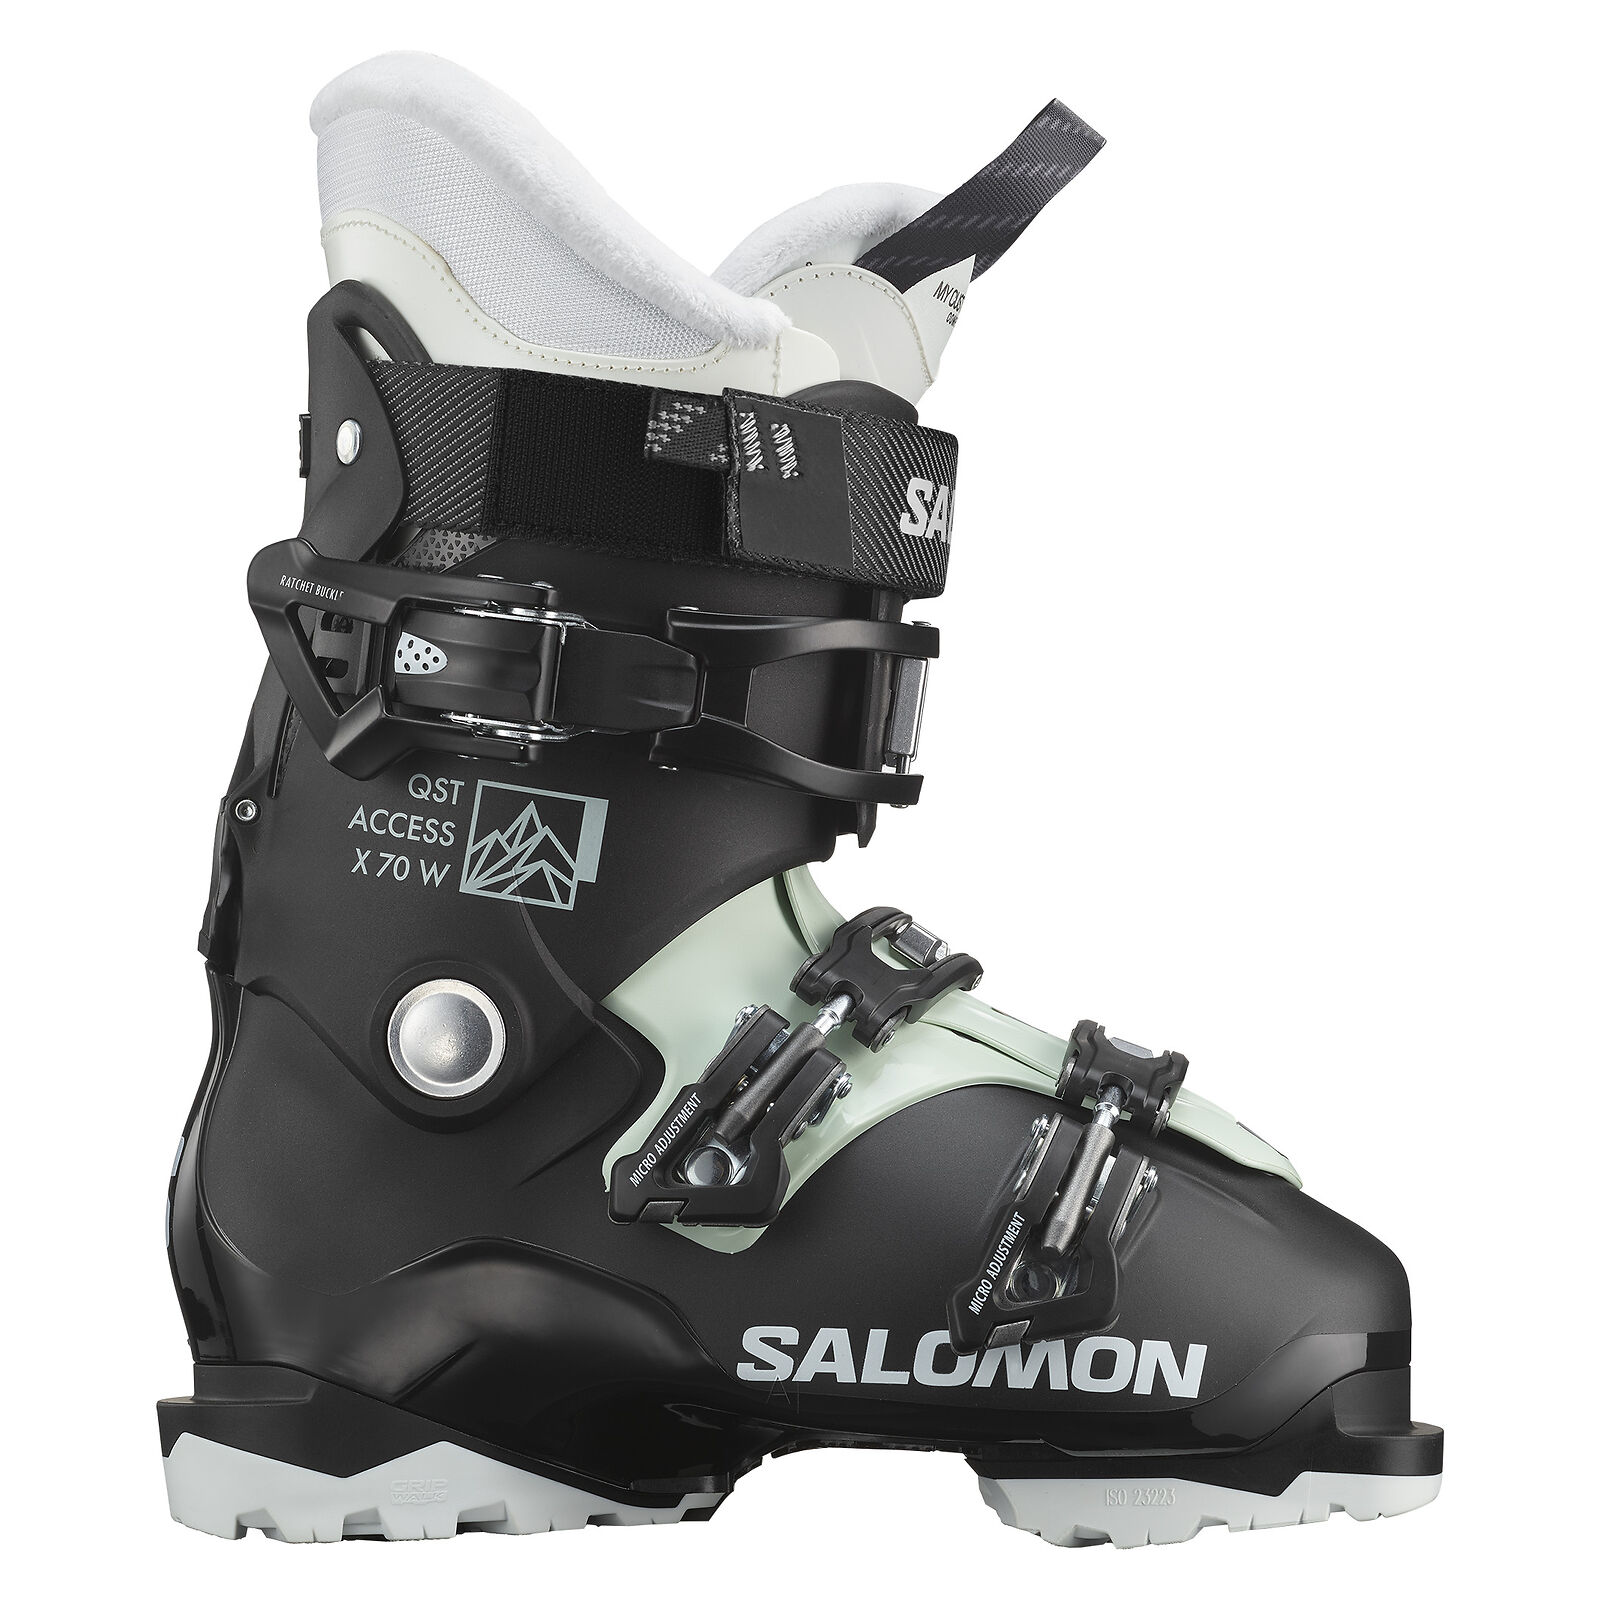 Zdjęcia - Buty narciarskie Salomon  damskie   Quest Access X70 W L47379100  2024